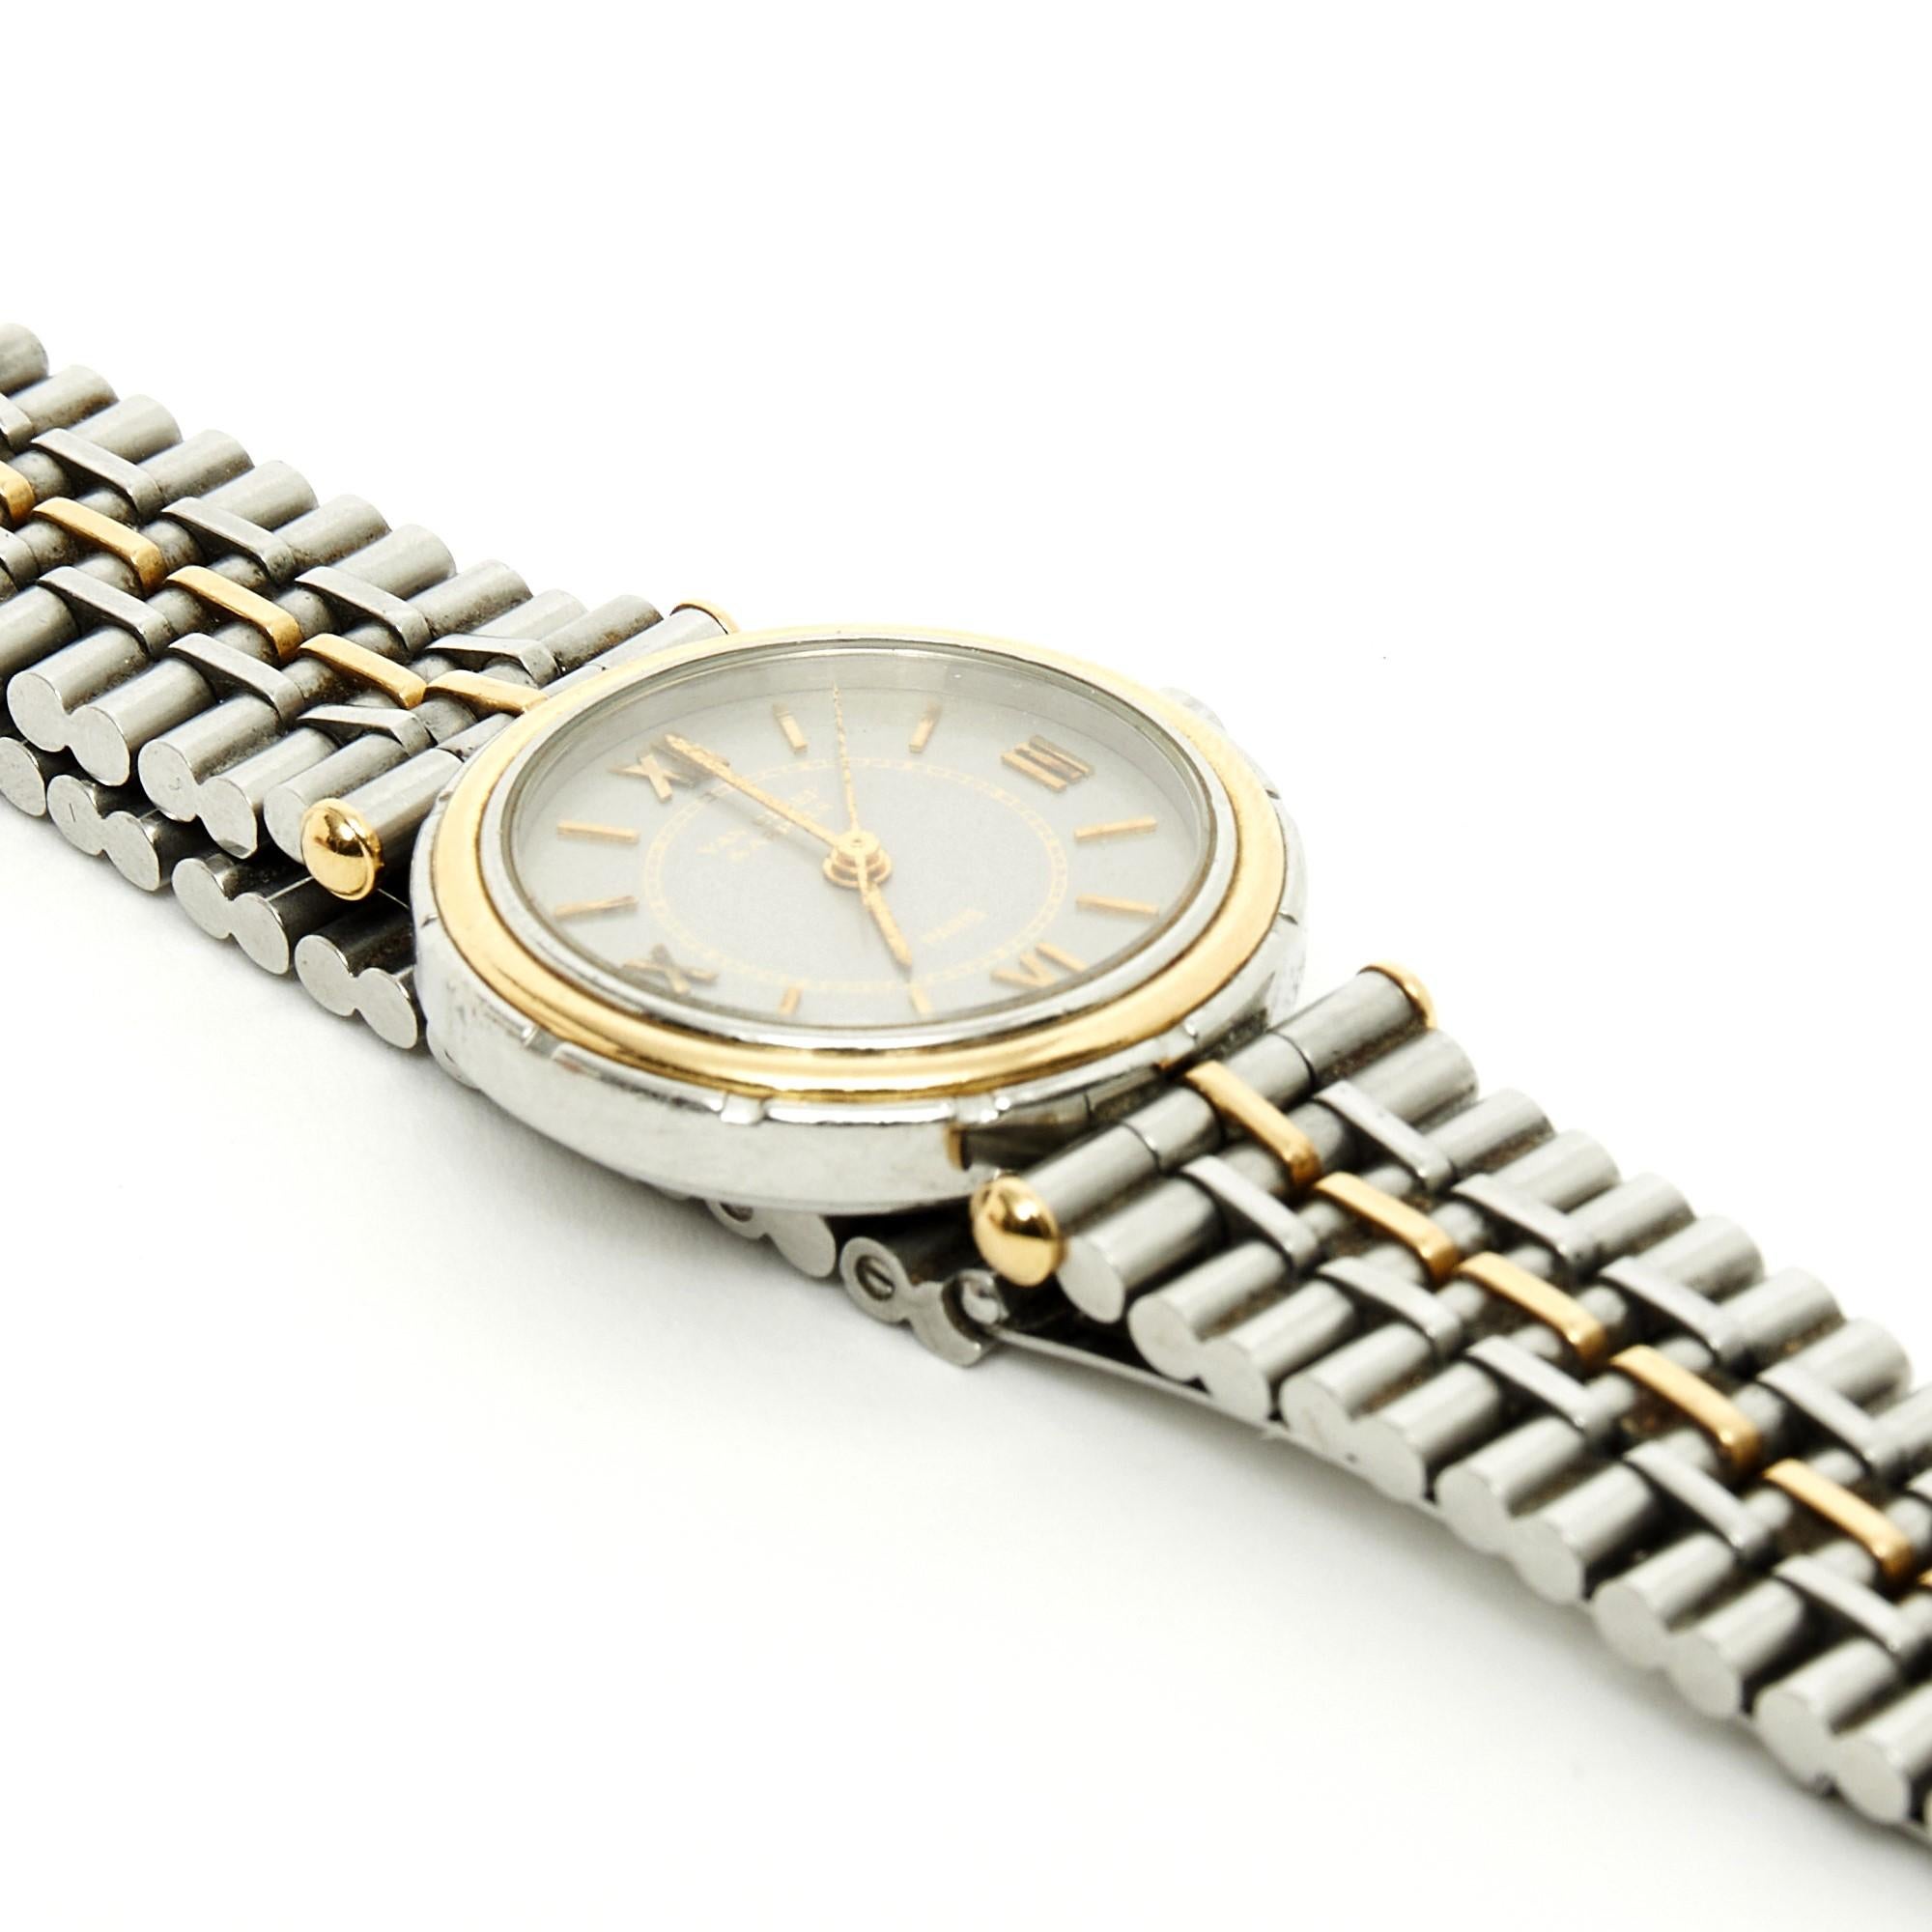 Montre Van Cleef & Foldes, modèle Pierre Arpels en acier et or jaune 18 carats, cadran gris avec index romains, mouvement à quartz, bracelet en acier et or jaune avec boucle déployante, vers 1990. Diamètre 2,4 cm, longueur totale de la montre fermée